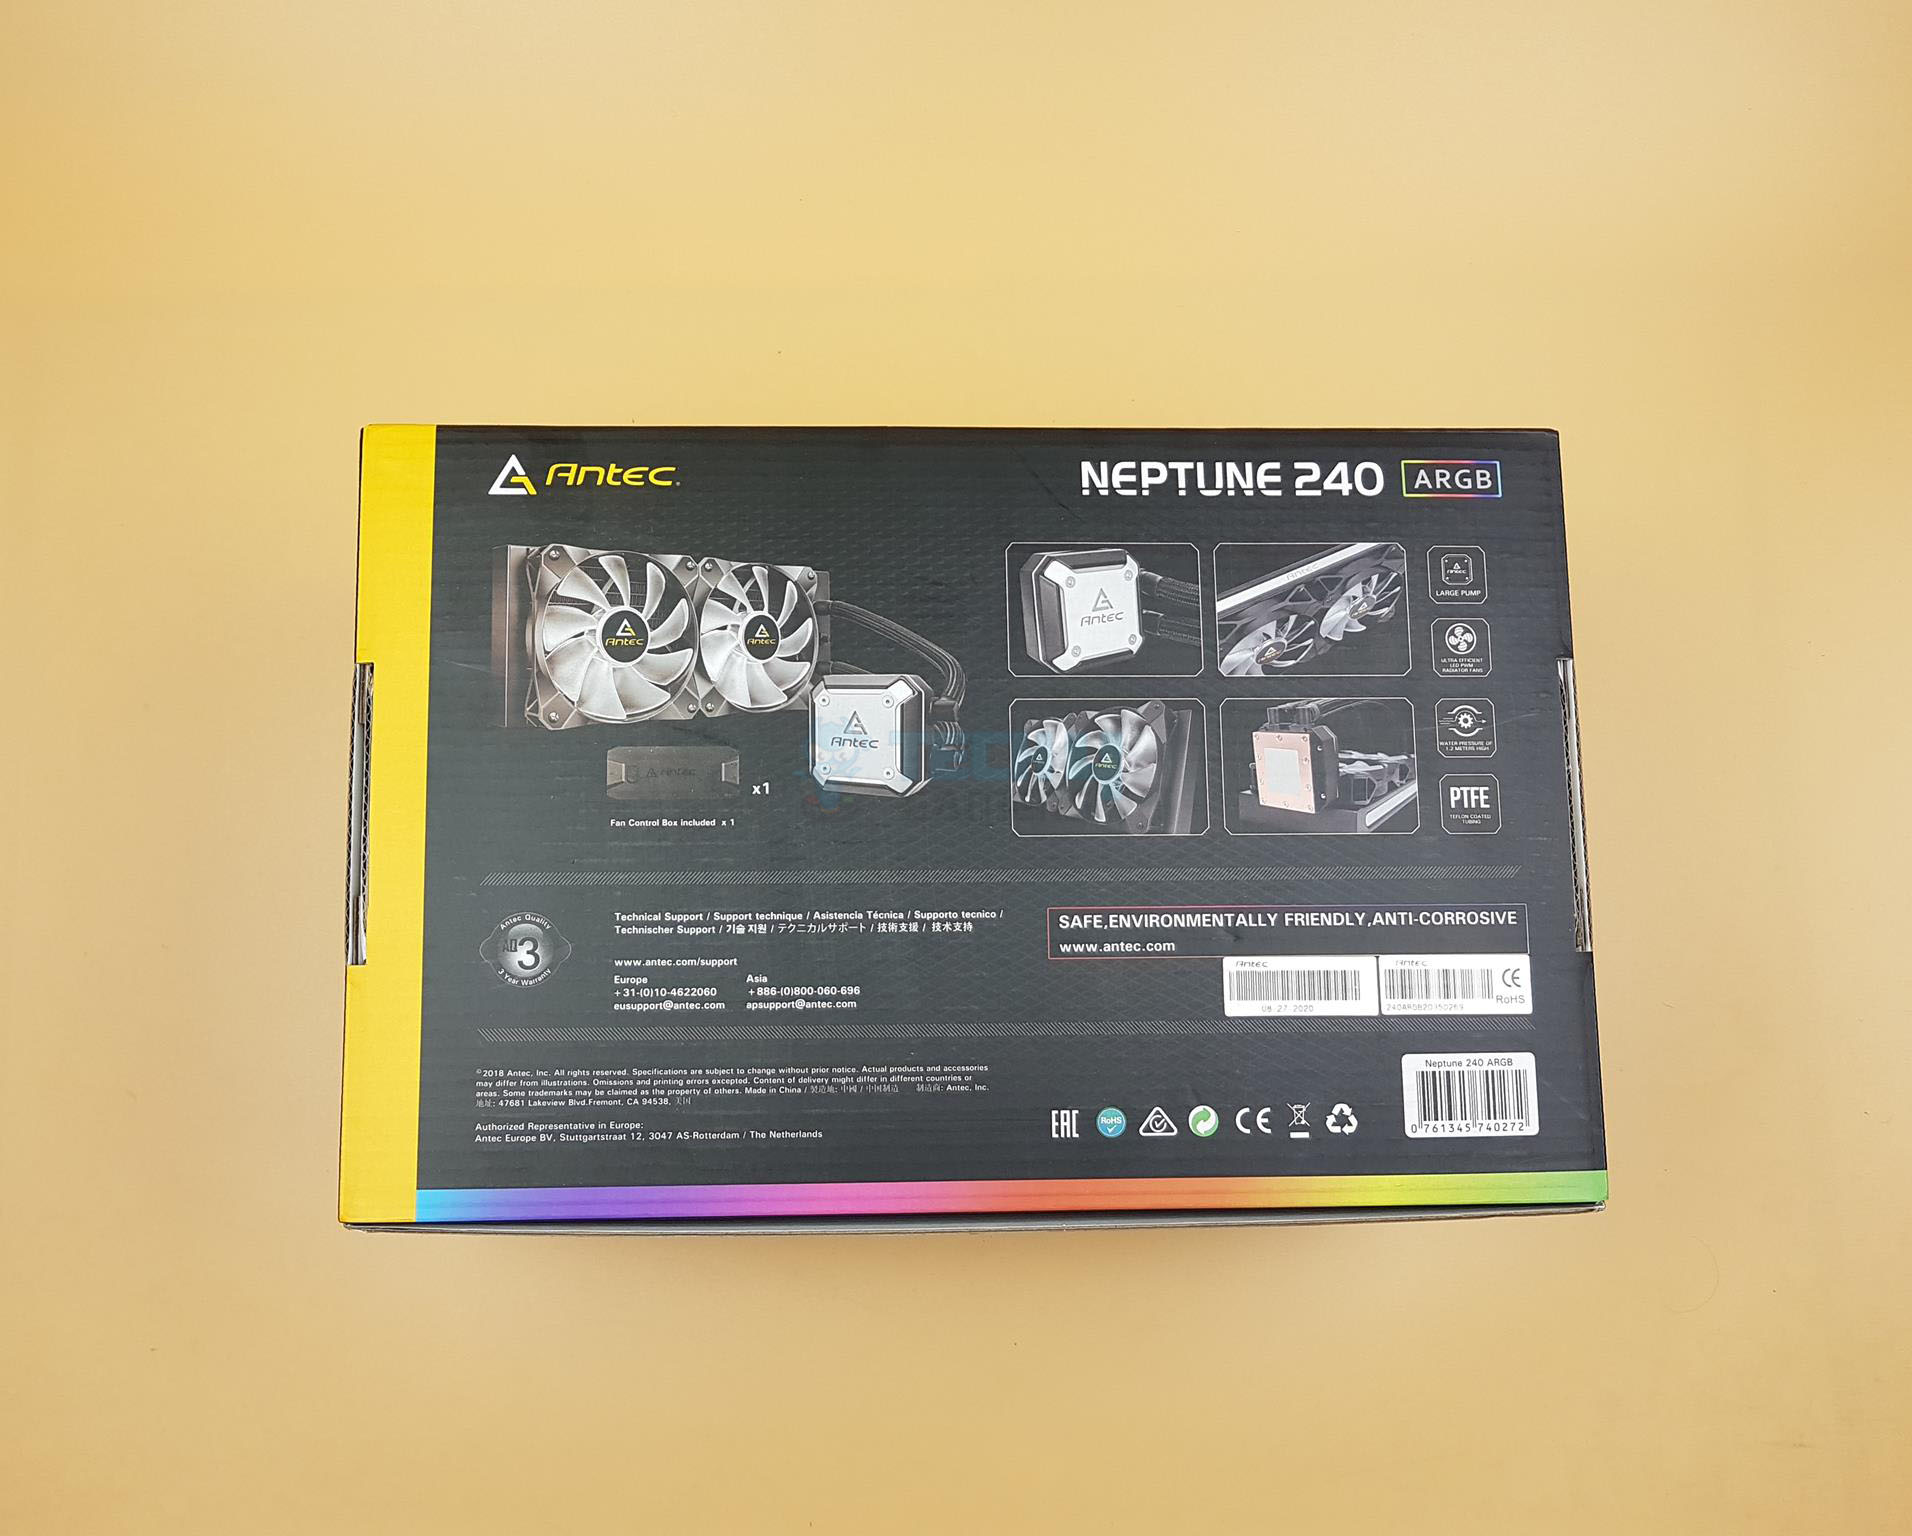  Neptune 240 ARGB Packaging back